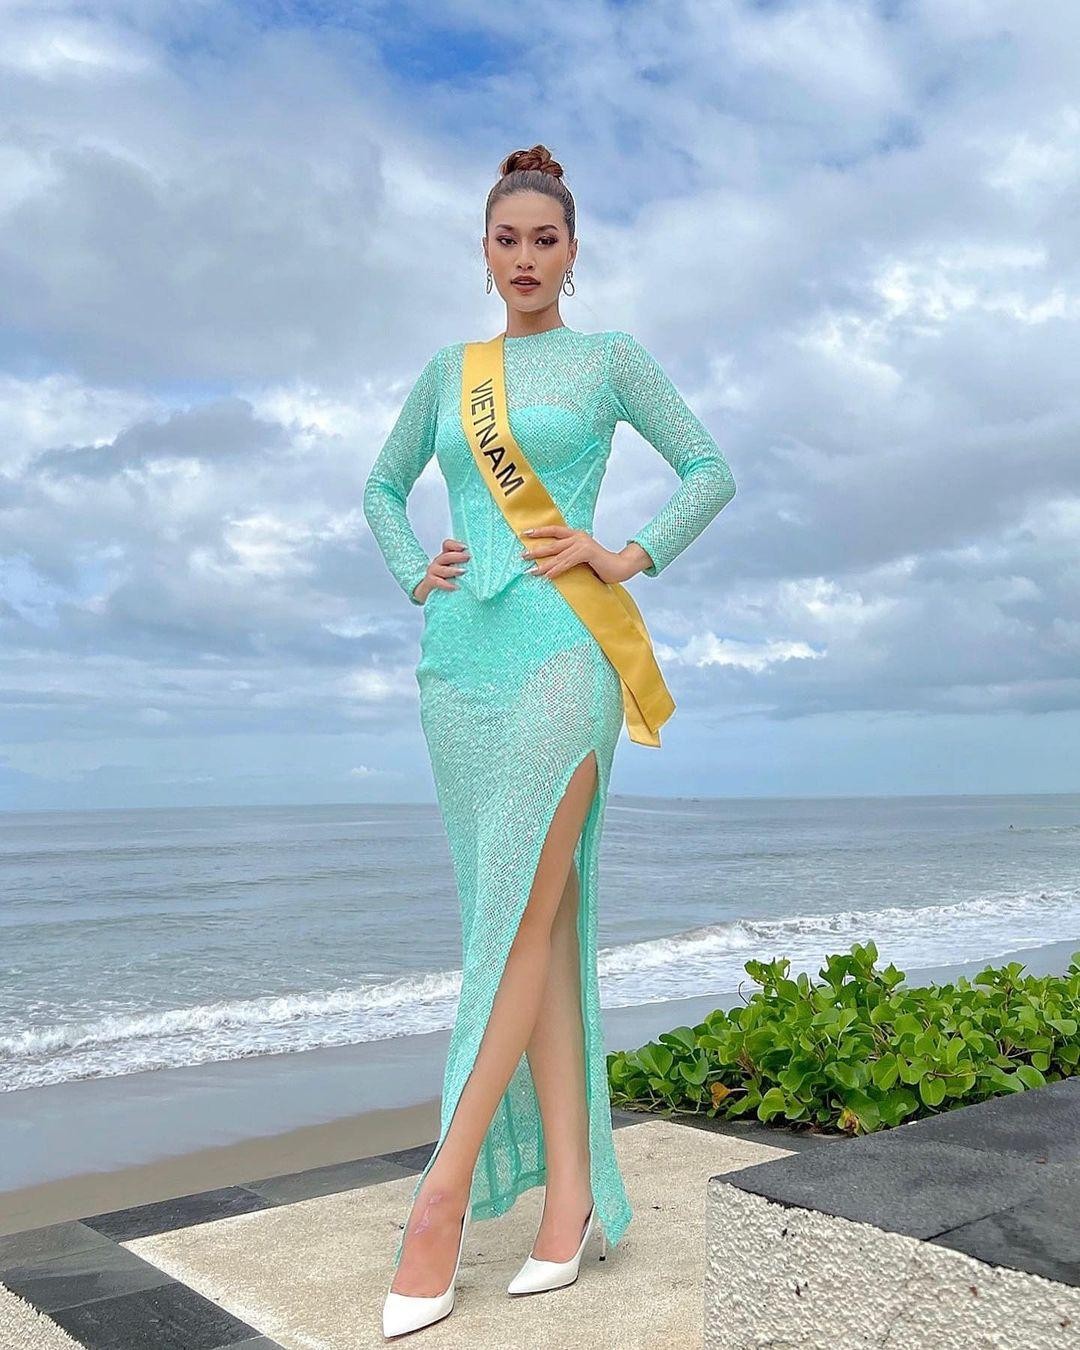 Thiên Ân diện đồ cắt xẻ tại Hoa hậu Hòa bình Quốc tế - Ảnh 10.